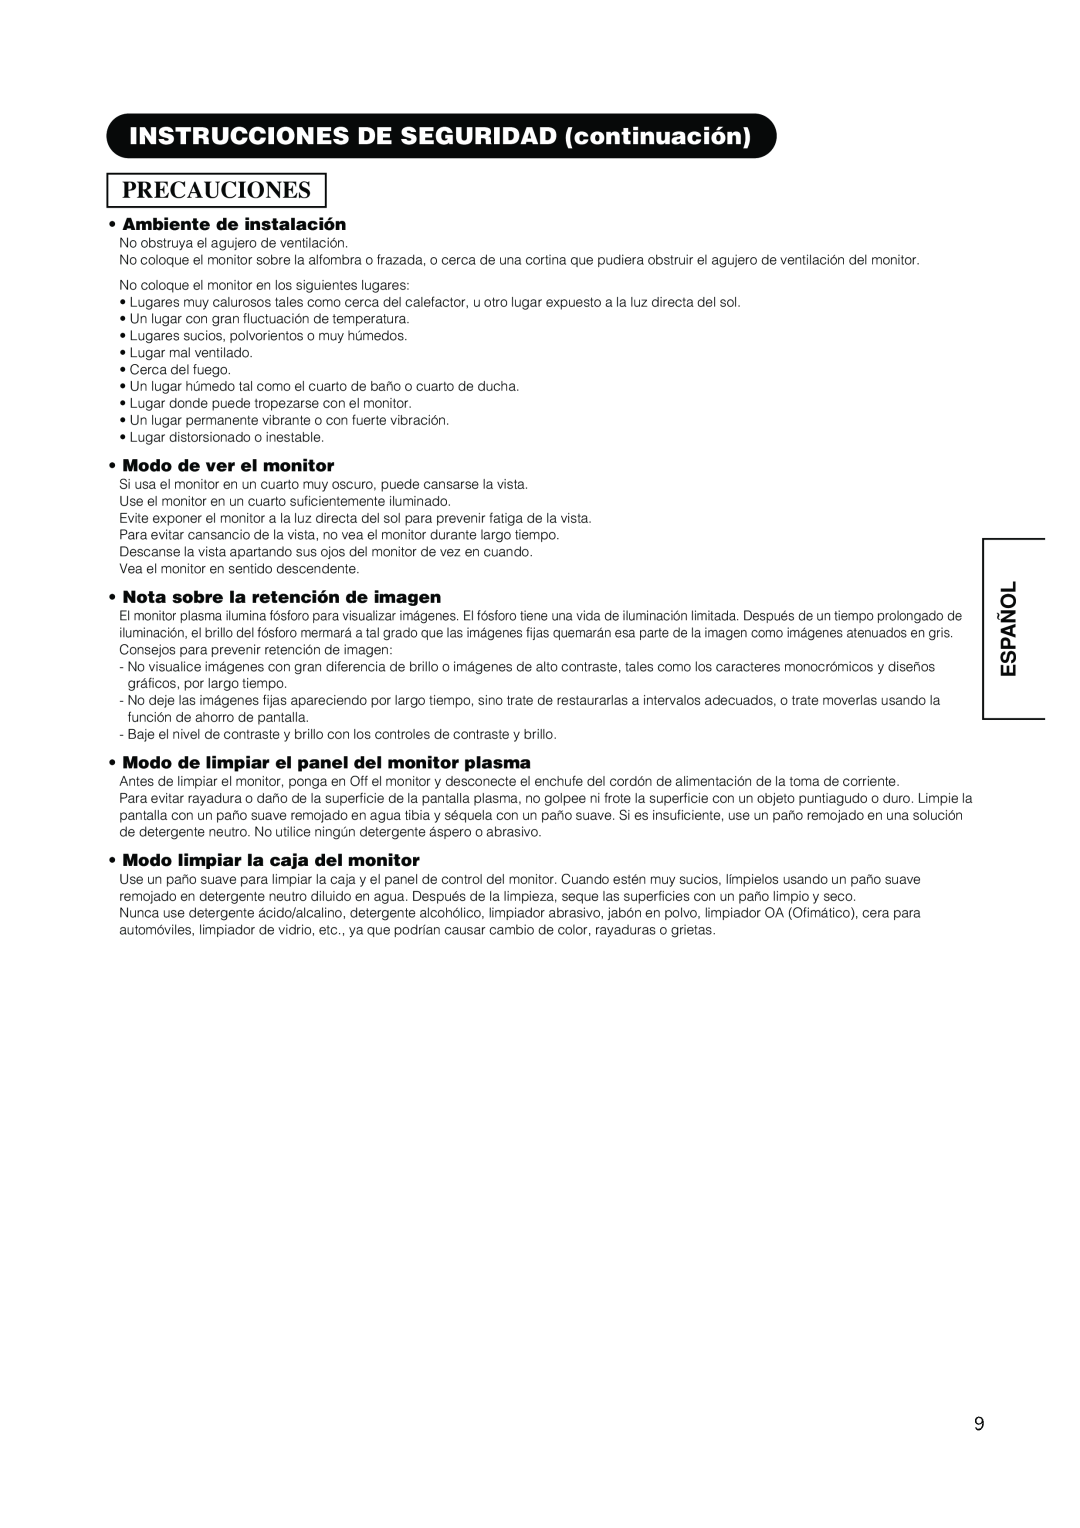 Hitachi PW1A user manual Precauciones, INSTRUCCIONES DE SEGURIDAD continuación, Español, Ambiente de instalación 